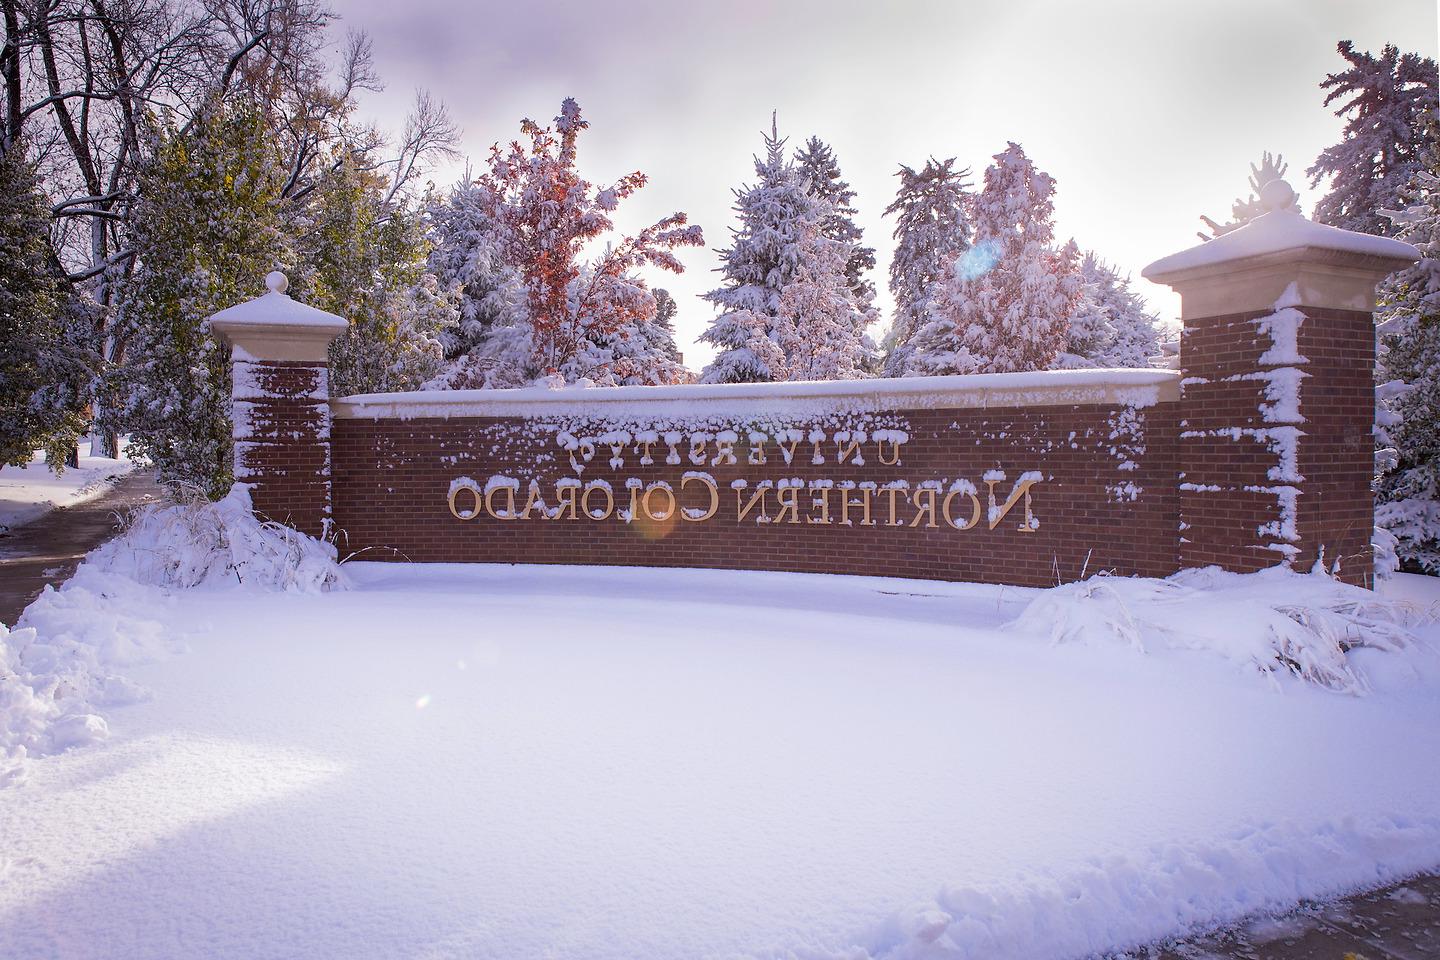 博天堂官方主校区的标志被雪覆盖